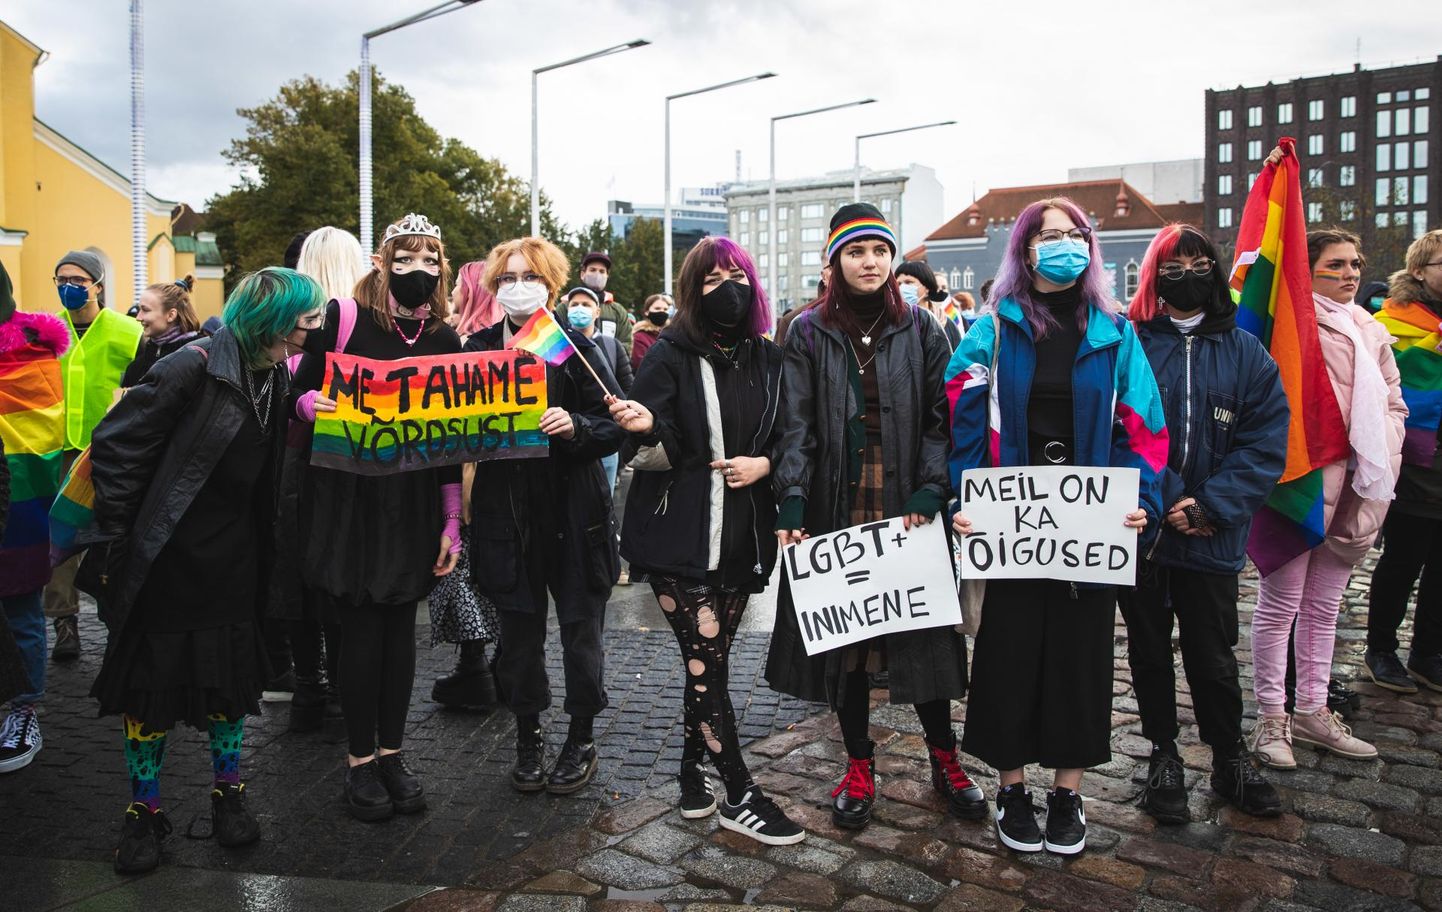 18 октября социал-демократы организовали в Таллинне демонстрацию в поддержку права всех людей вступать в брак.